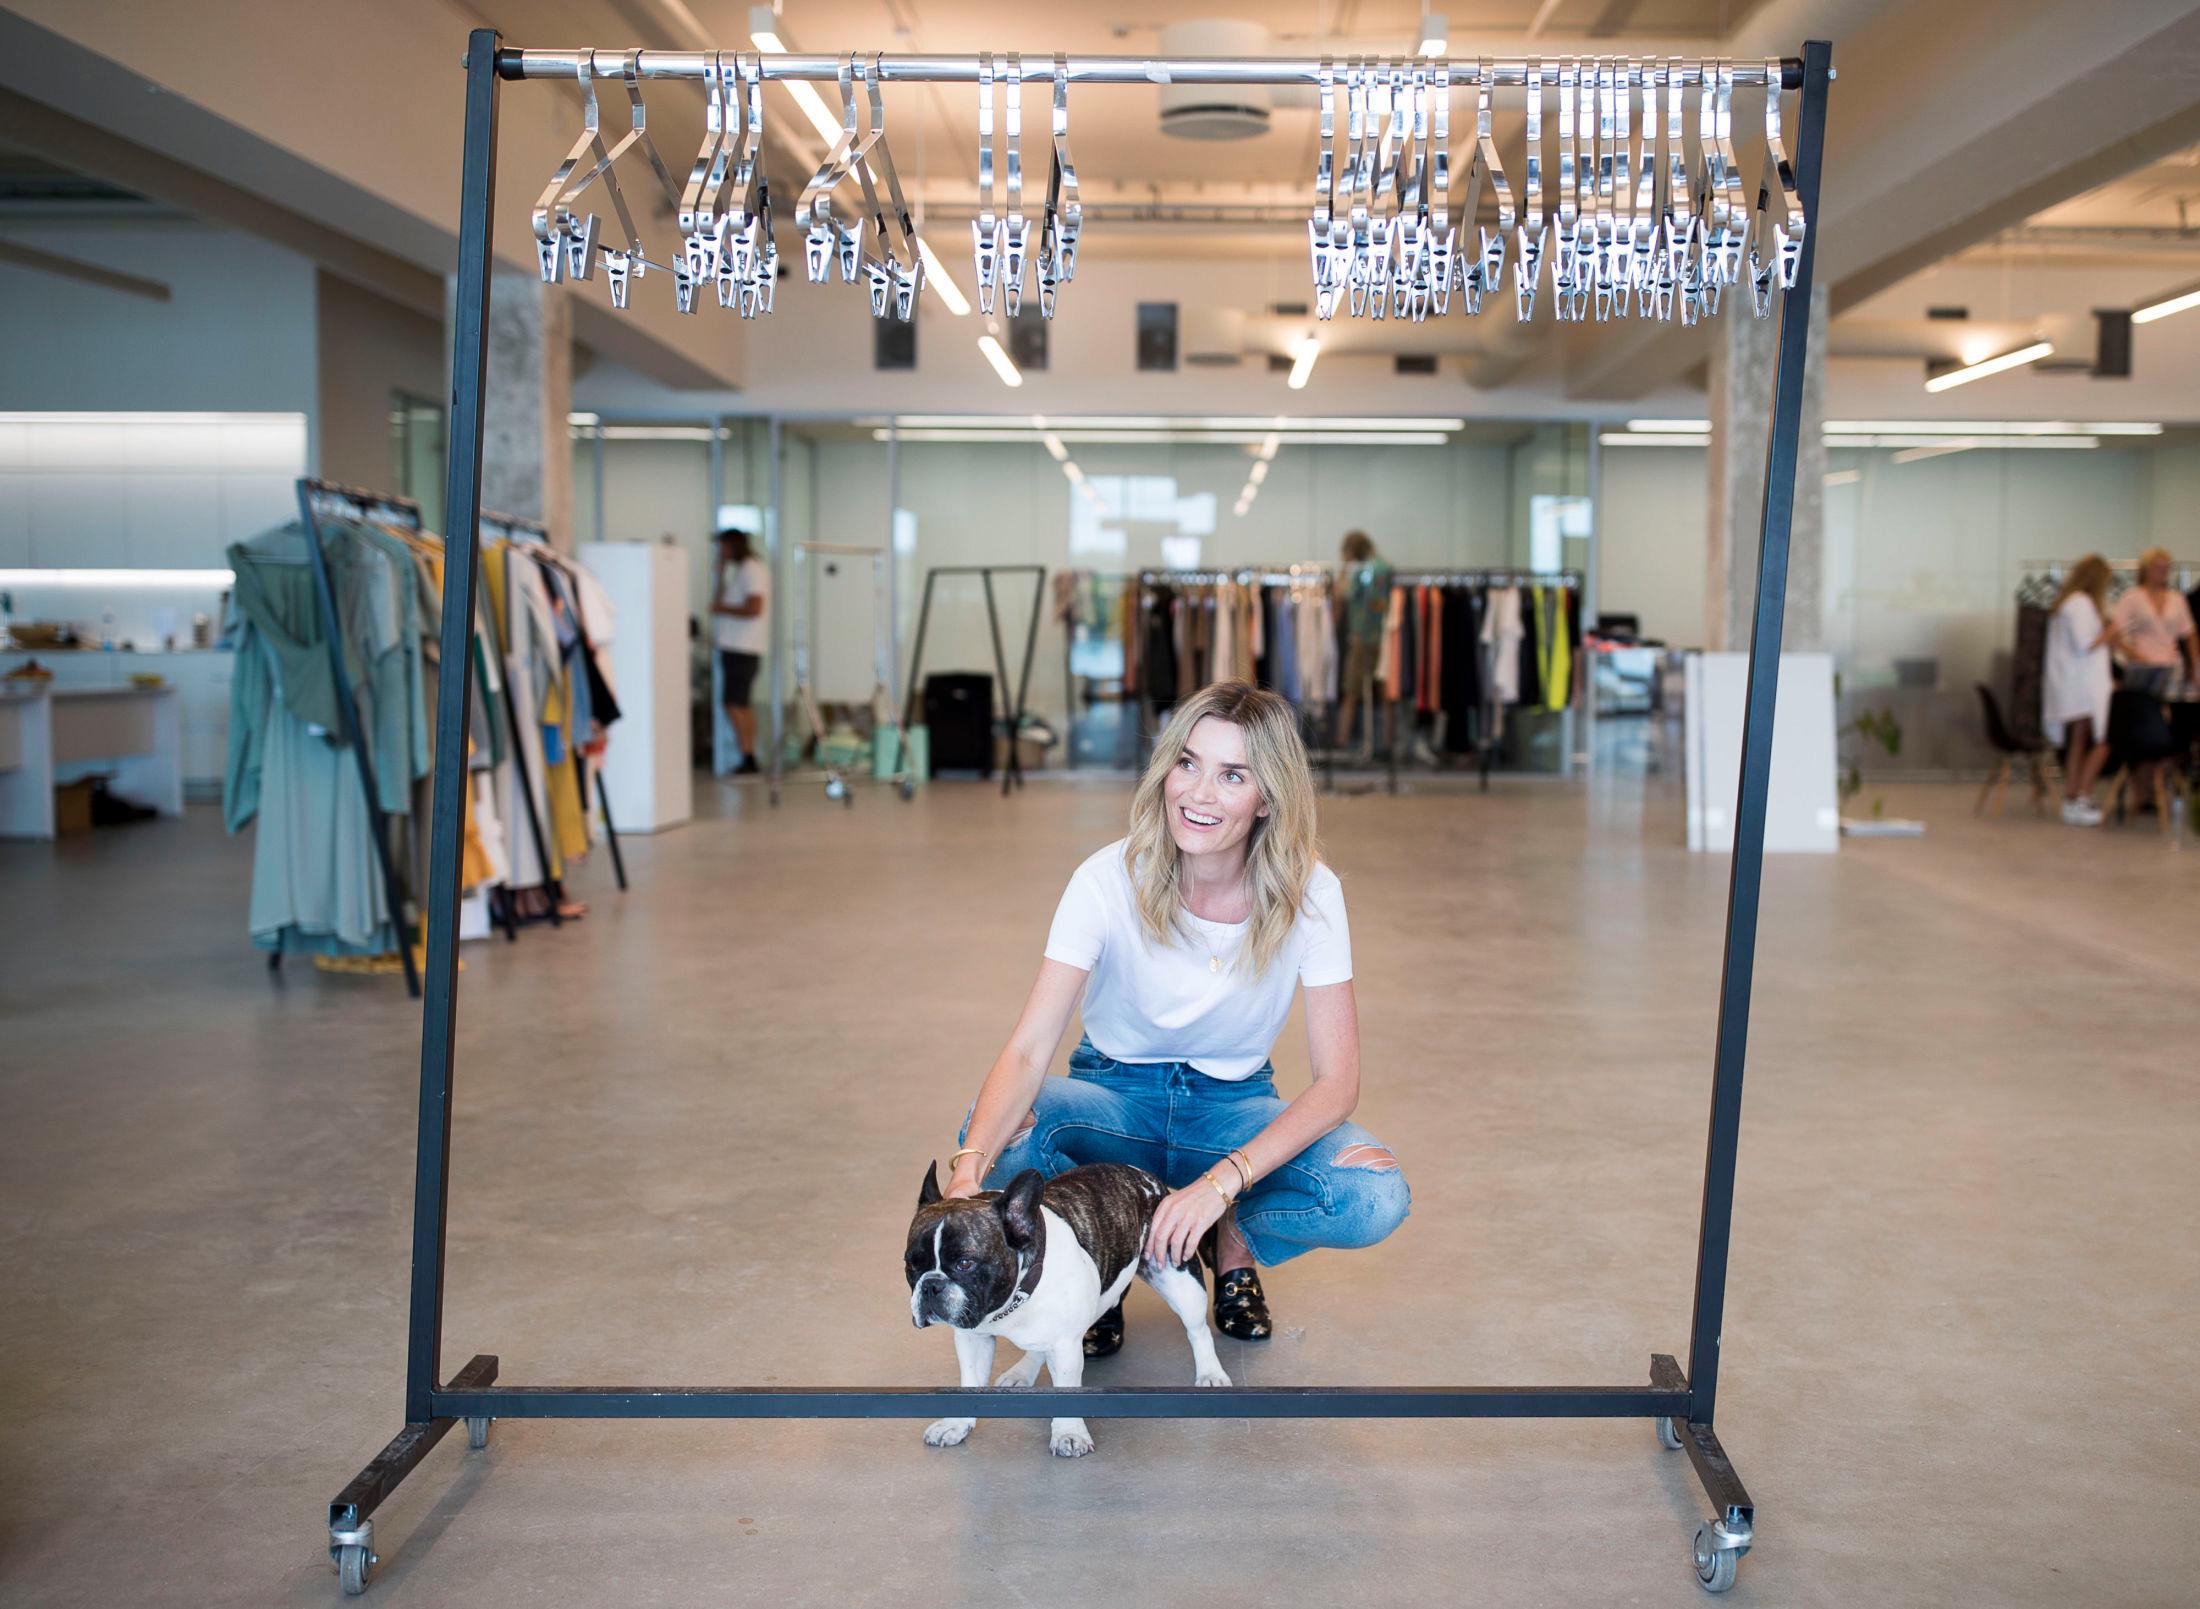 DRØMMEJOBB: Camilla Pihl lanserer sitt eget merke og den første kolleksjonen kommer i butikk neste vår. Her fra Holzweiler sine lokaler på Lysaker sammen med hunden Theodor. FOTO: FREDRIK SOLSTAD/VG.